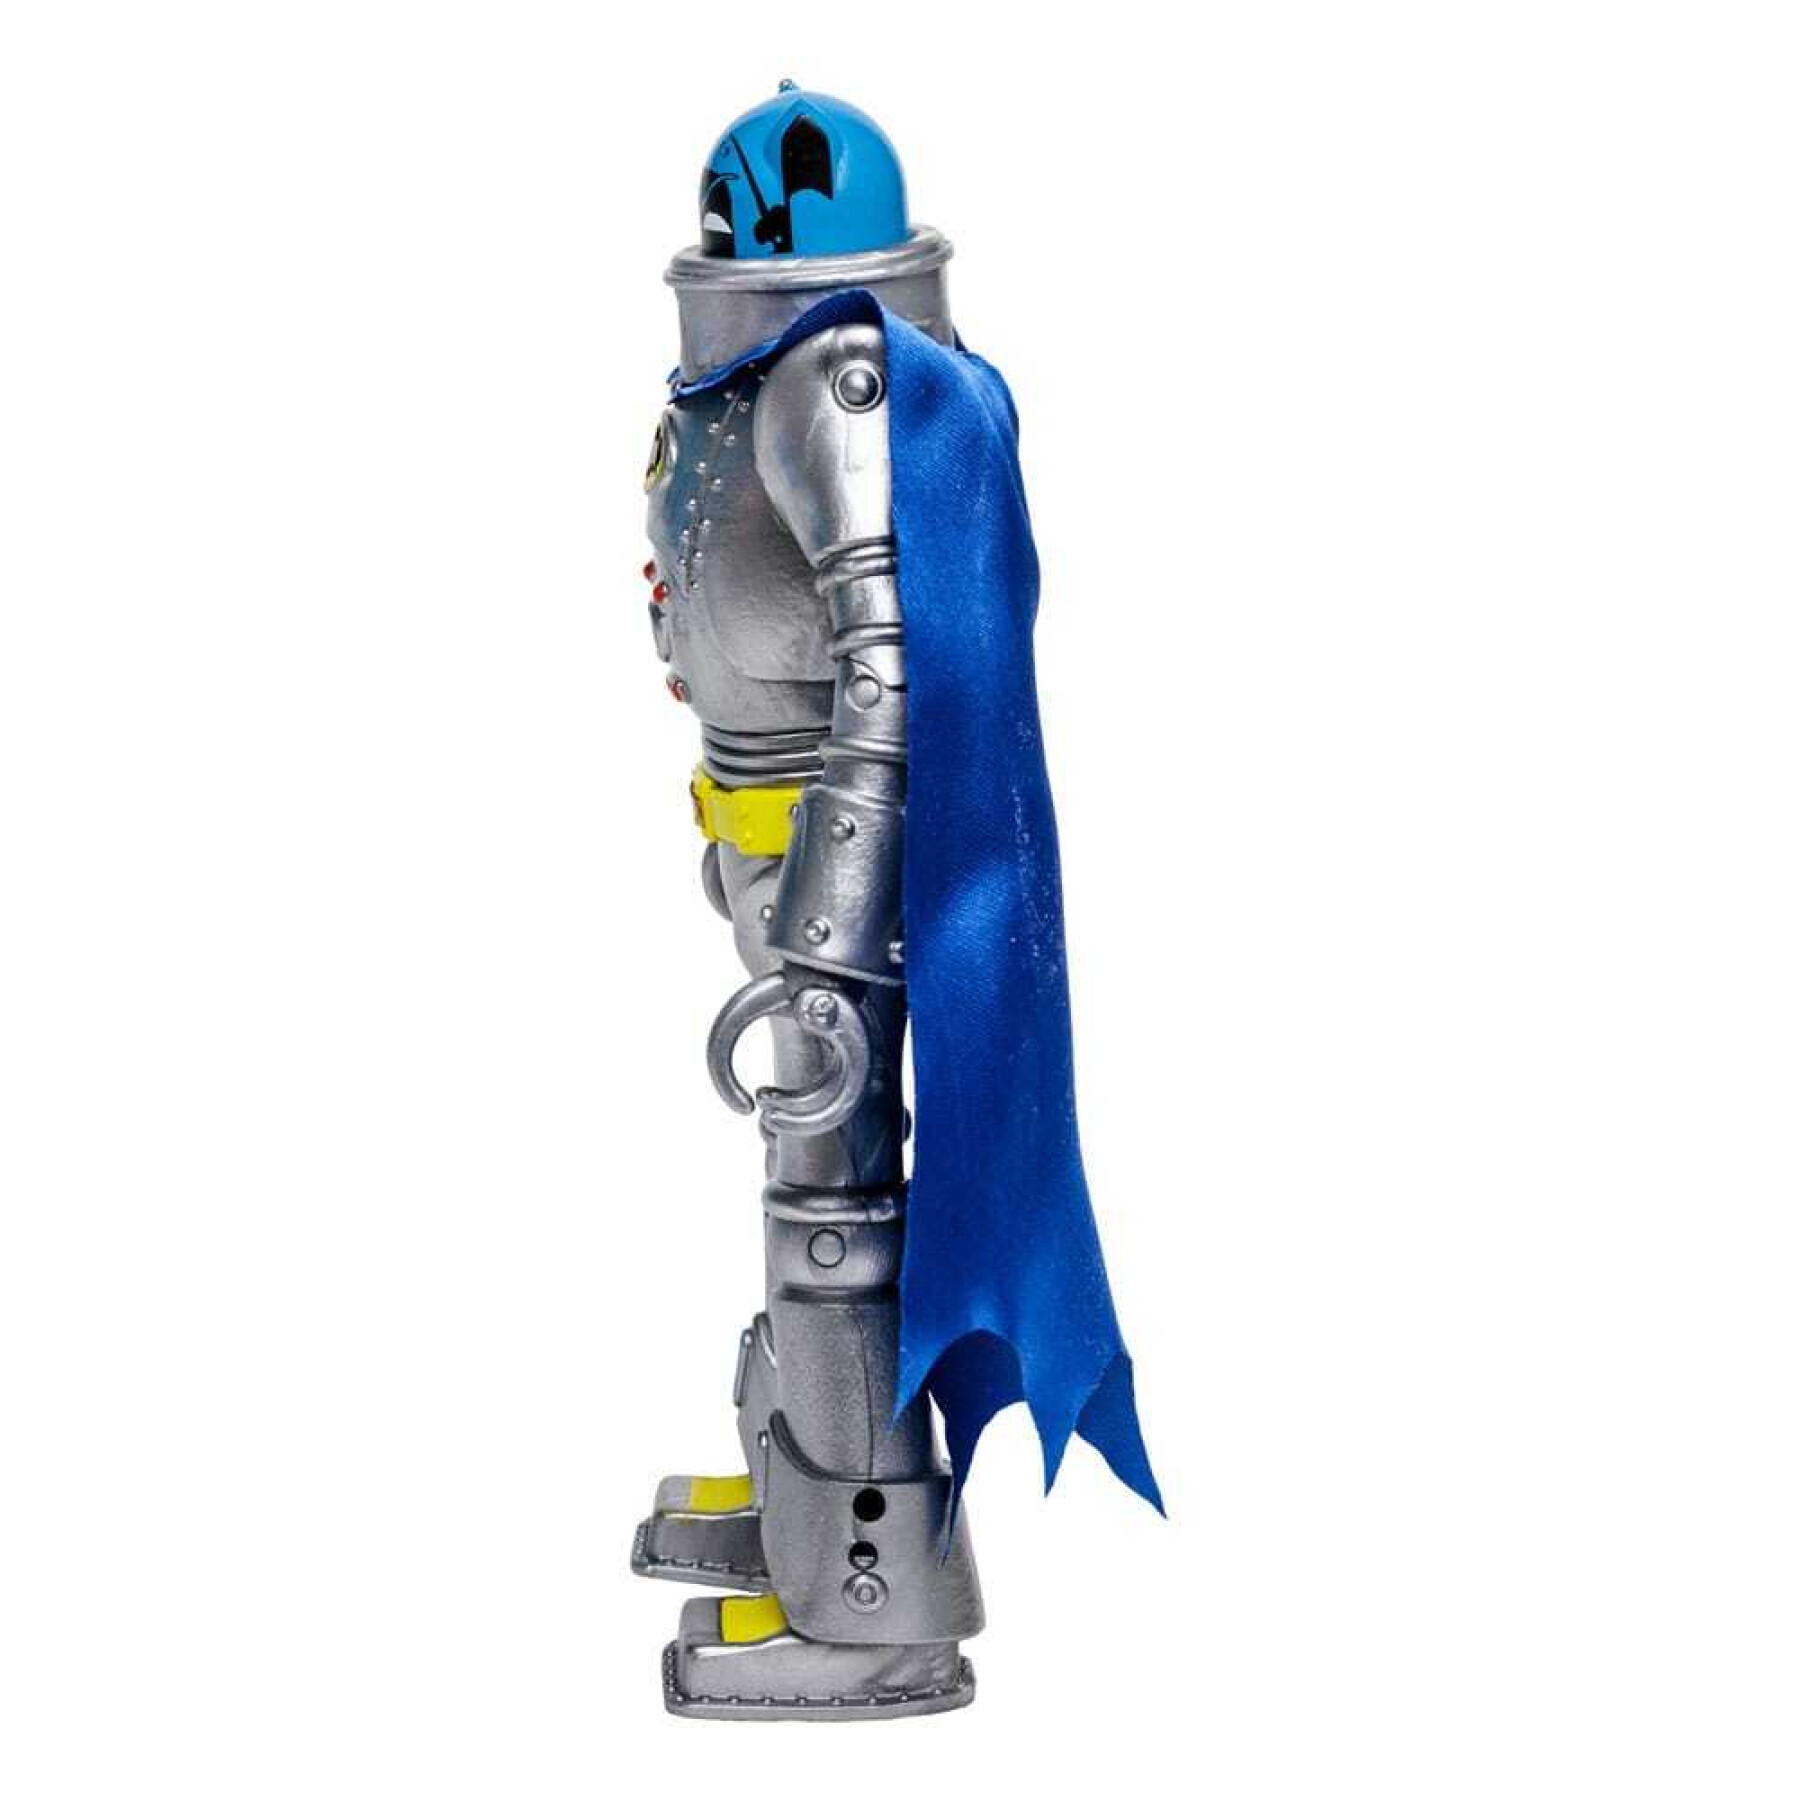 Beeldje McFarlane Toys DC Retro Batman 66 Robot